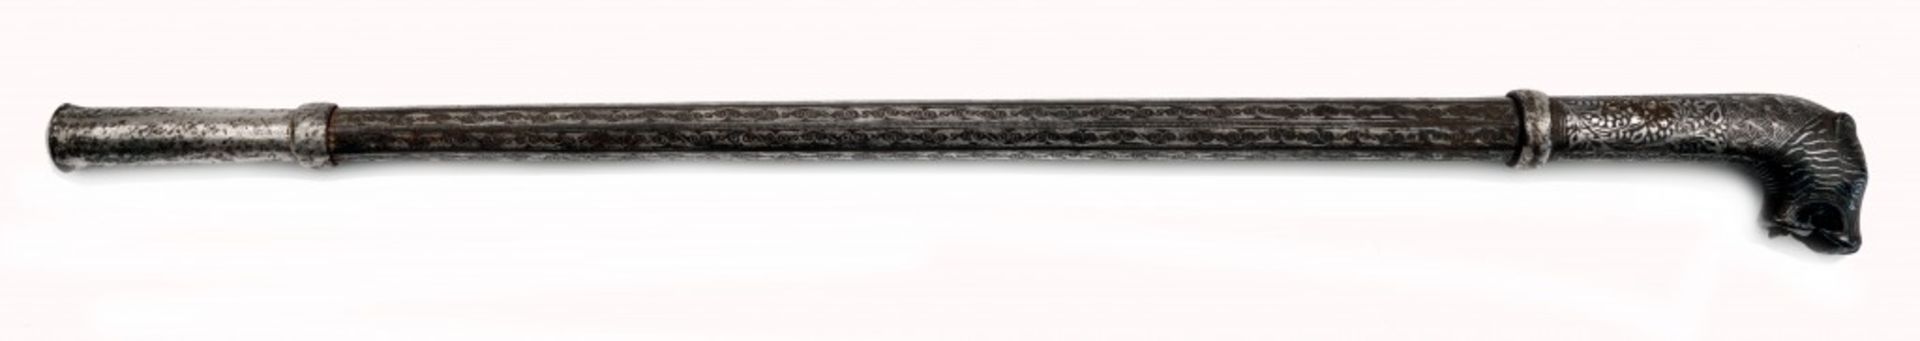 Zeremonieller Kolben (Gupti) mit zwei versteckten Stilettklingen - Image 4 of 4